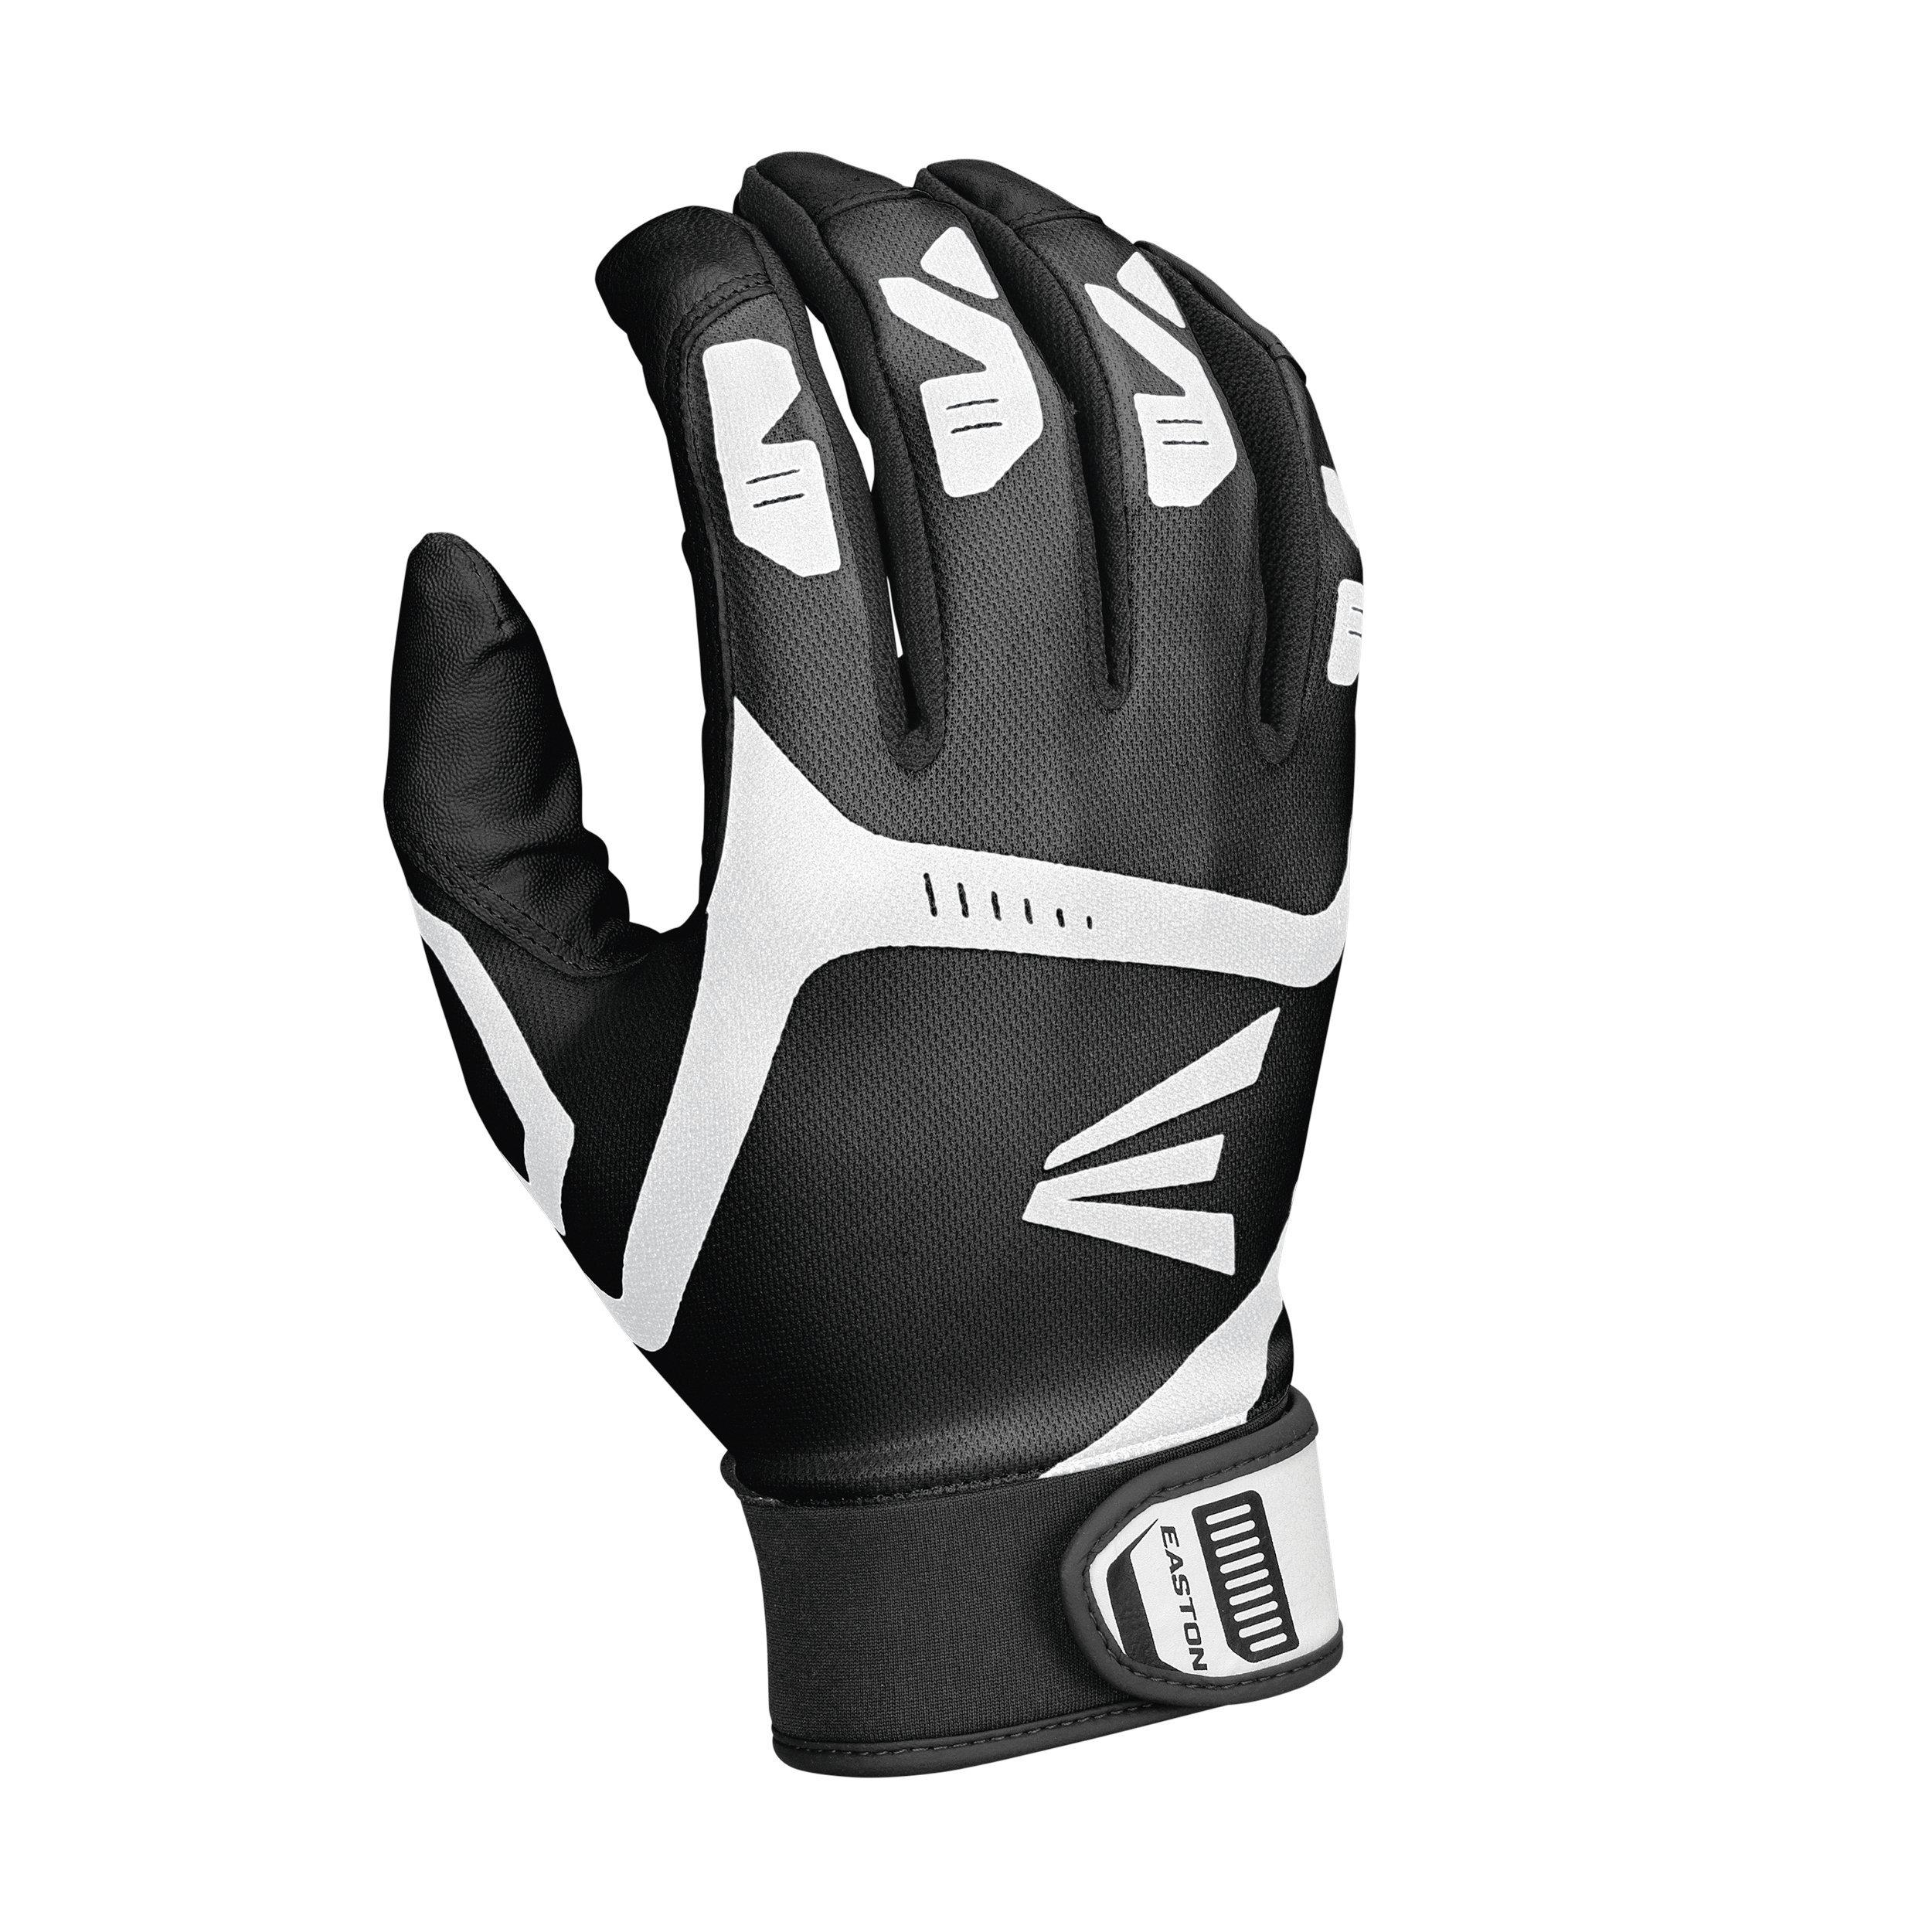 Easton Z7 Hyperskin White/Black/Orange Base Camo Batting Gloves Adult 